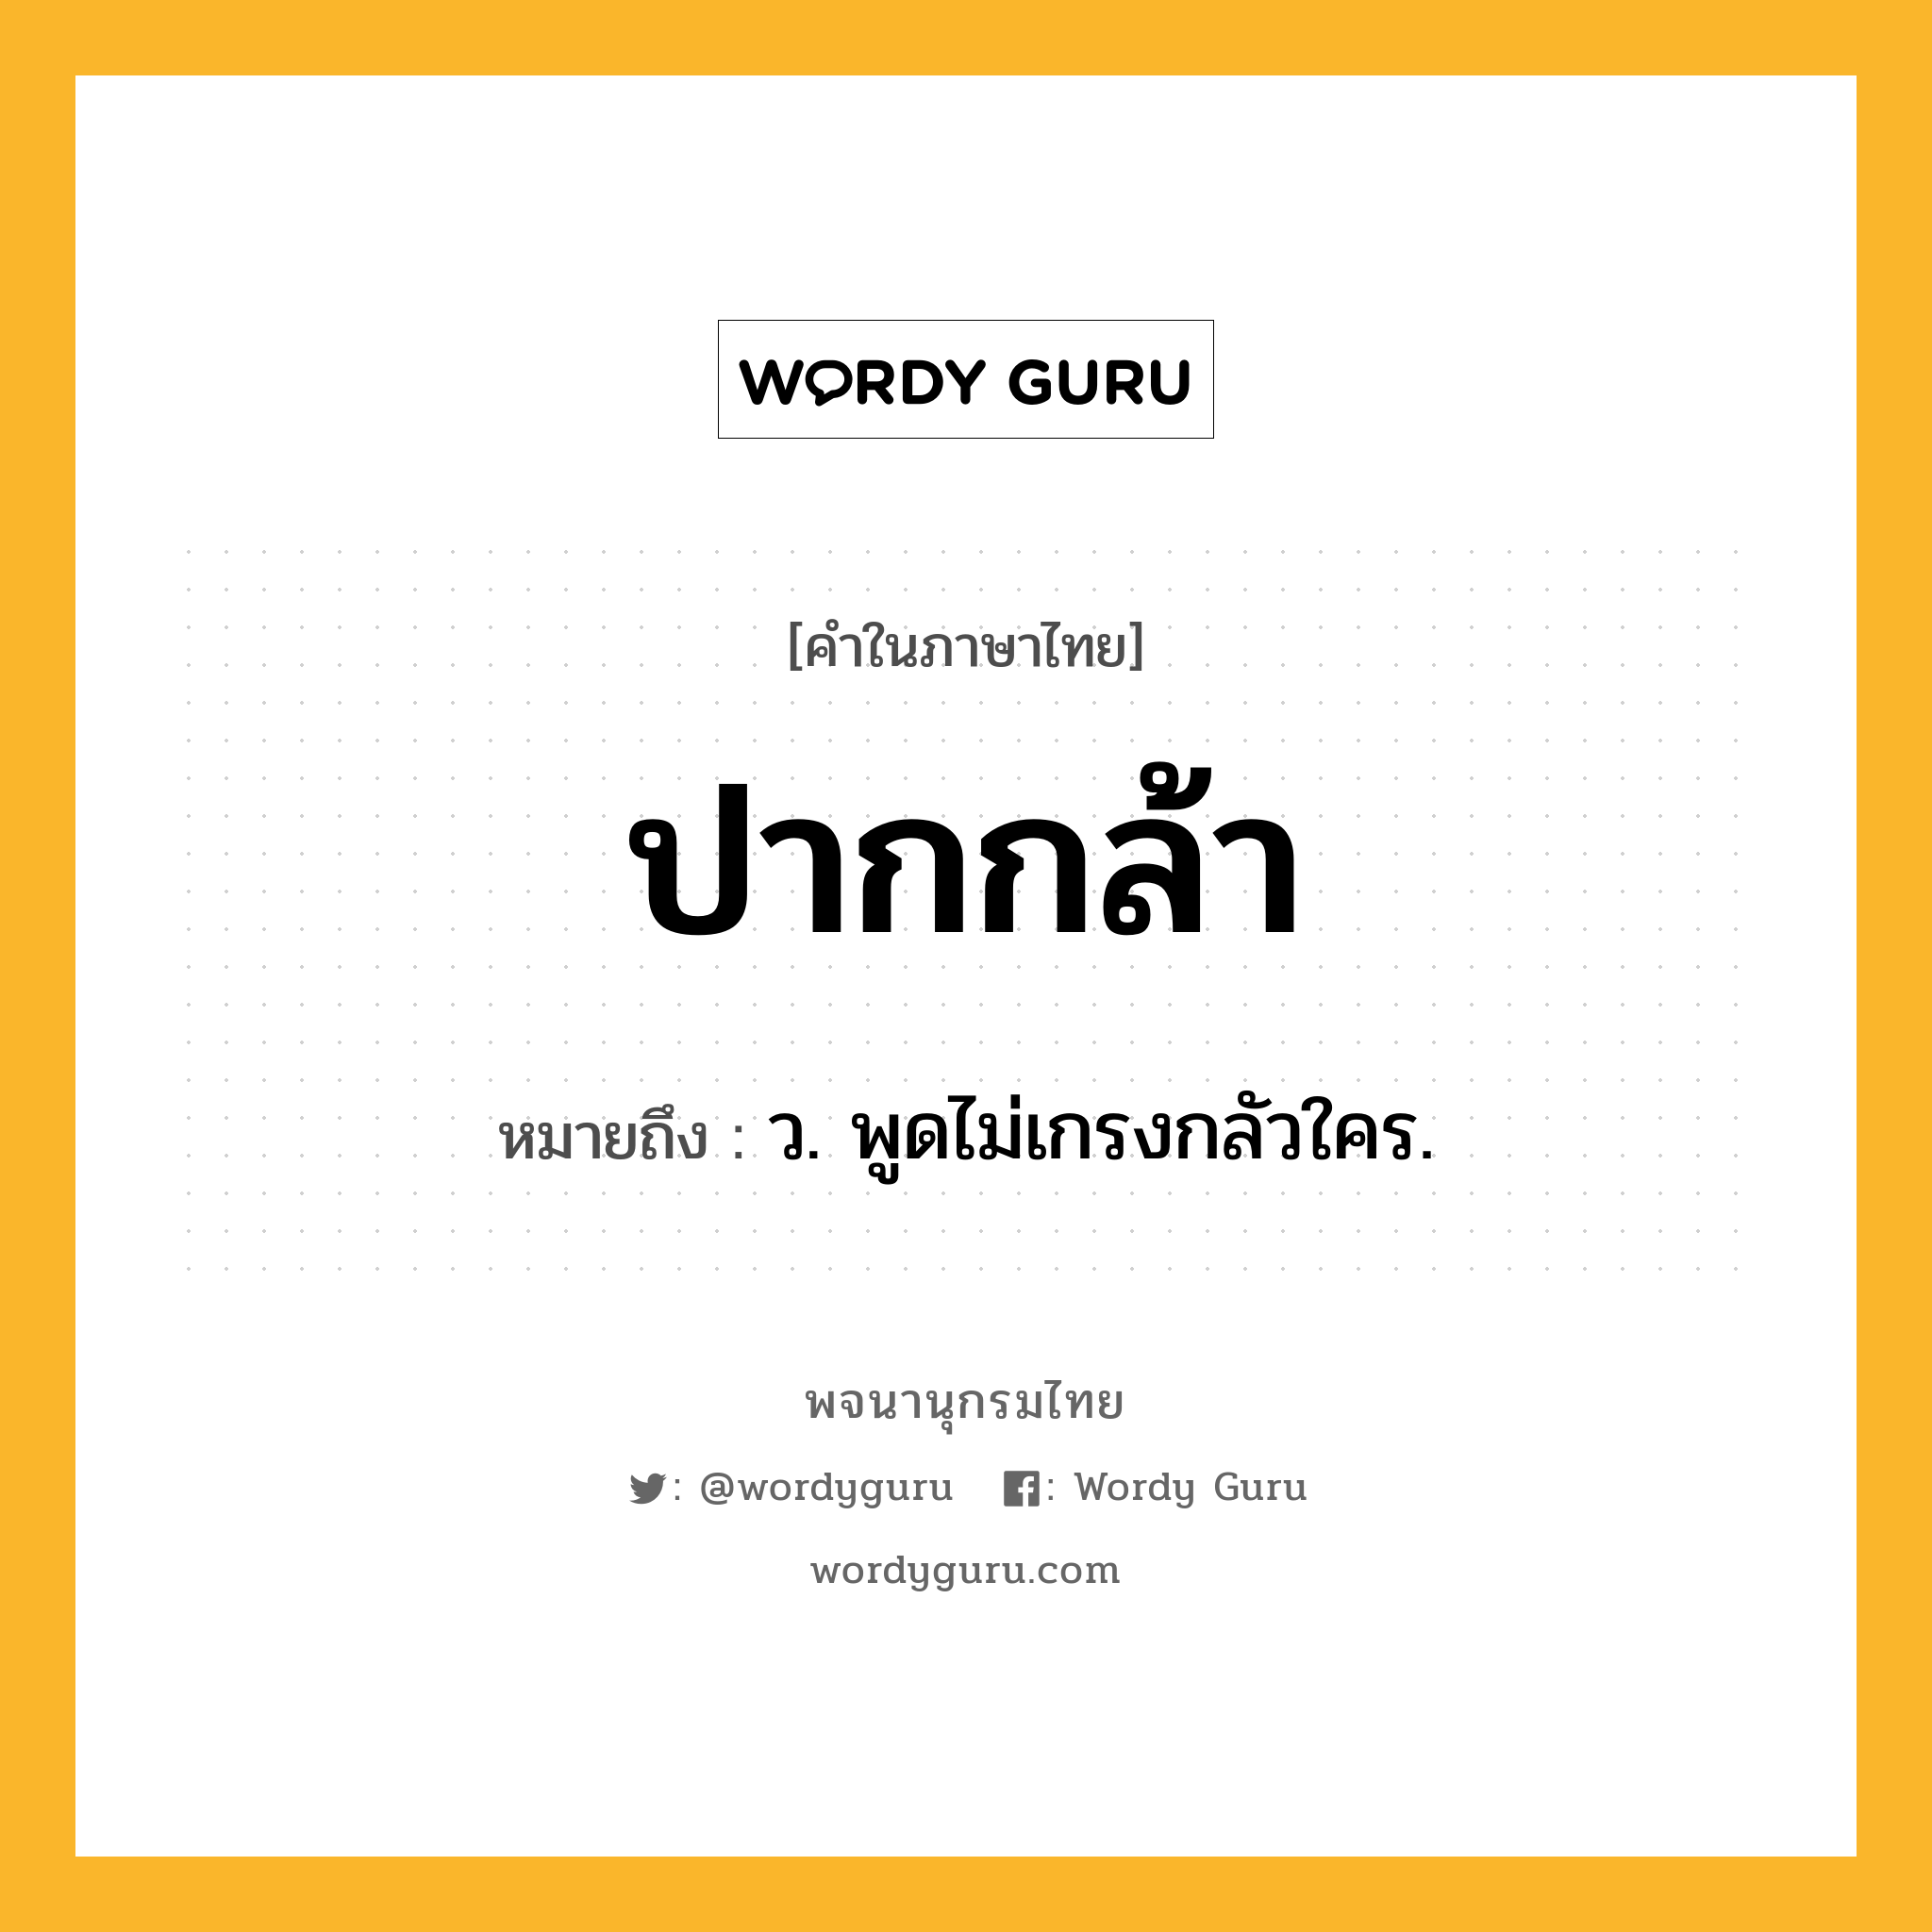 ปากกล้า หมายถึงอะไร?, คำในภาษาไทย ปากกล้า หมายถึง ว. พูดไม่เกรงกลัวใคร.